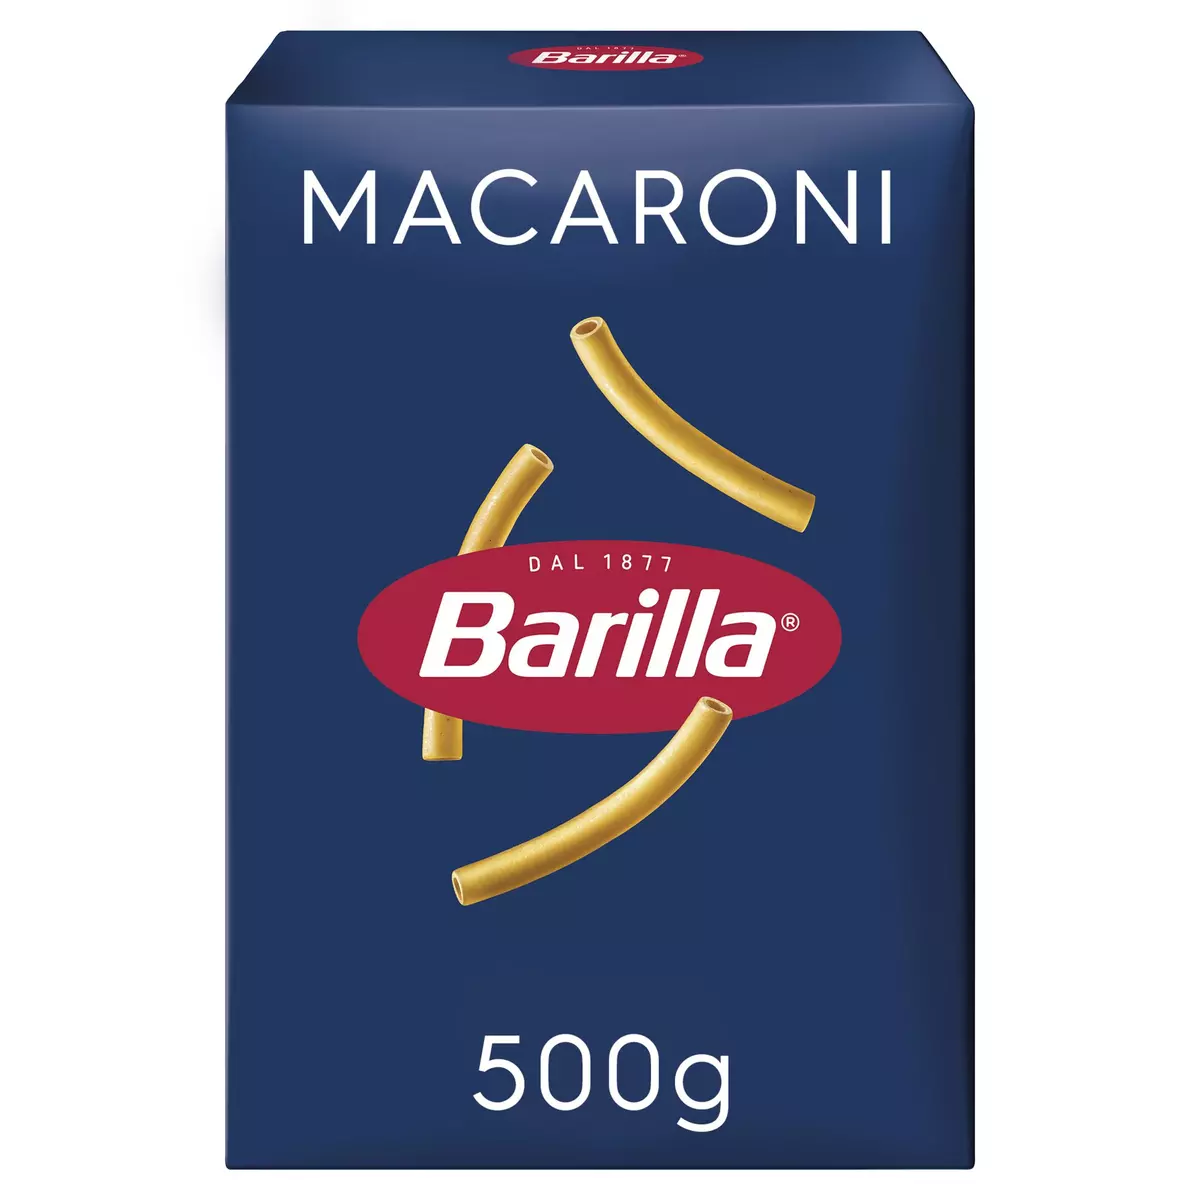 BARILLA Maccheroni 500g